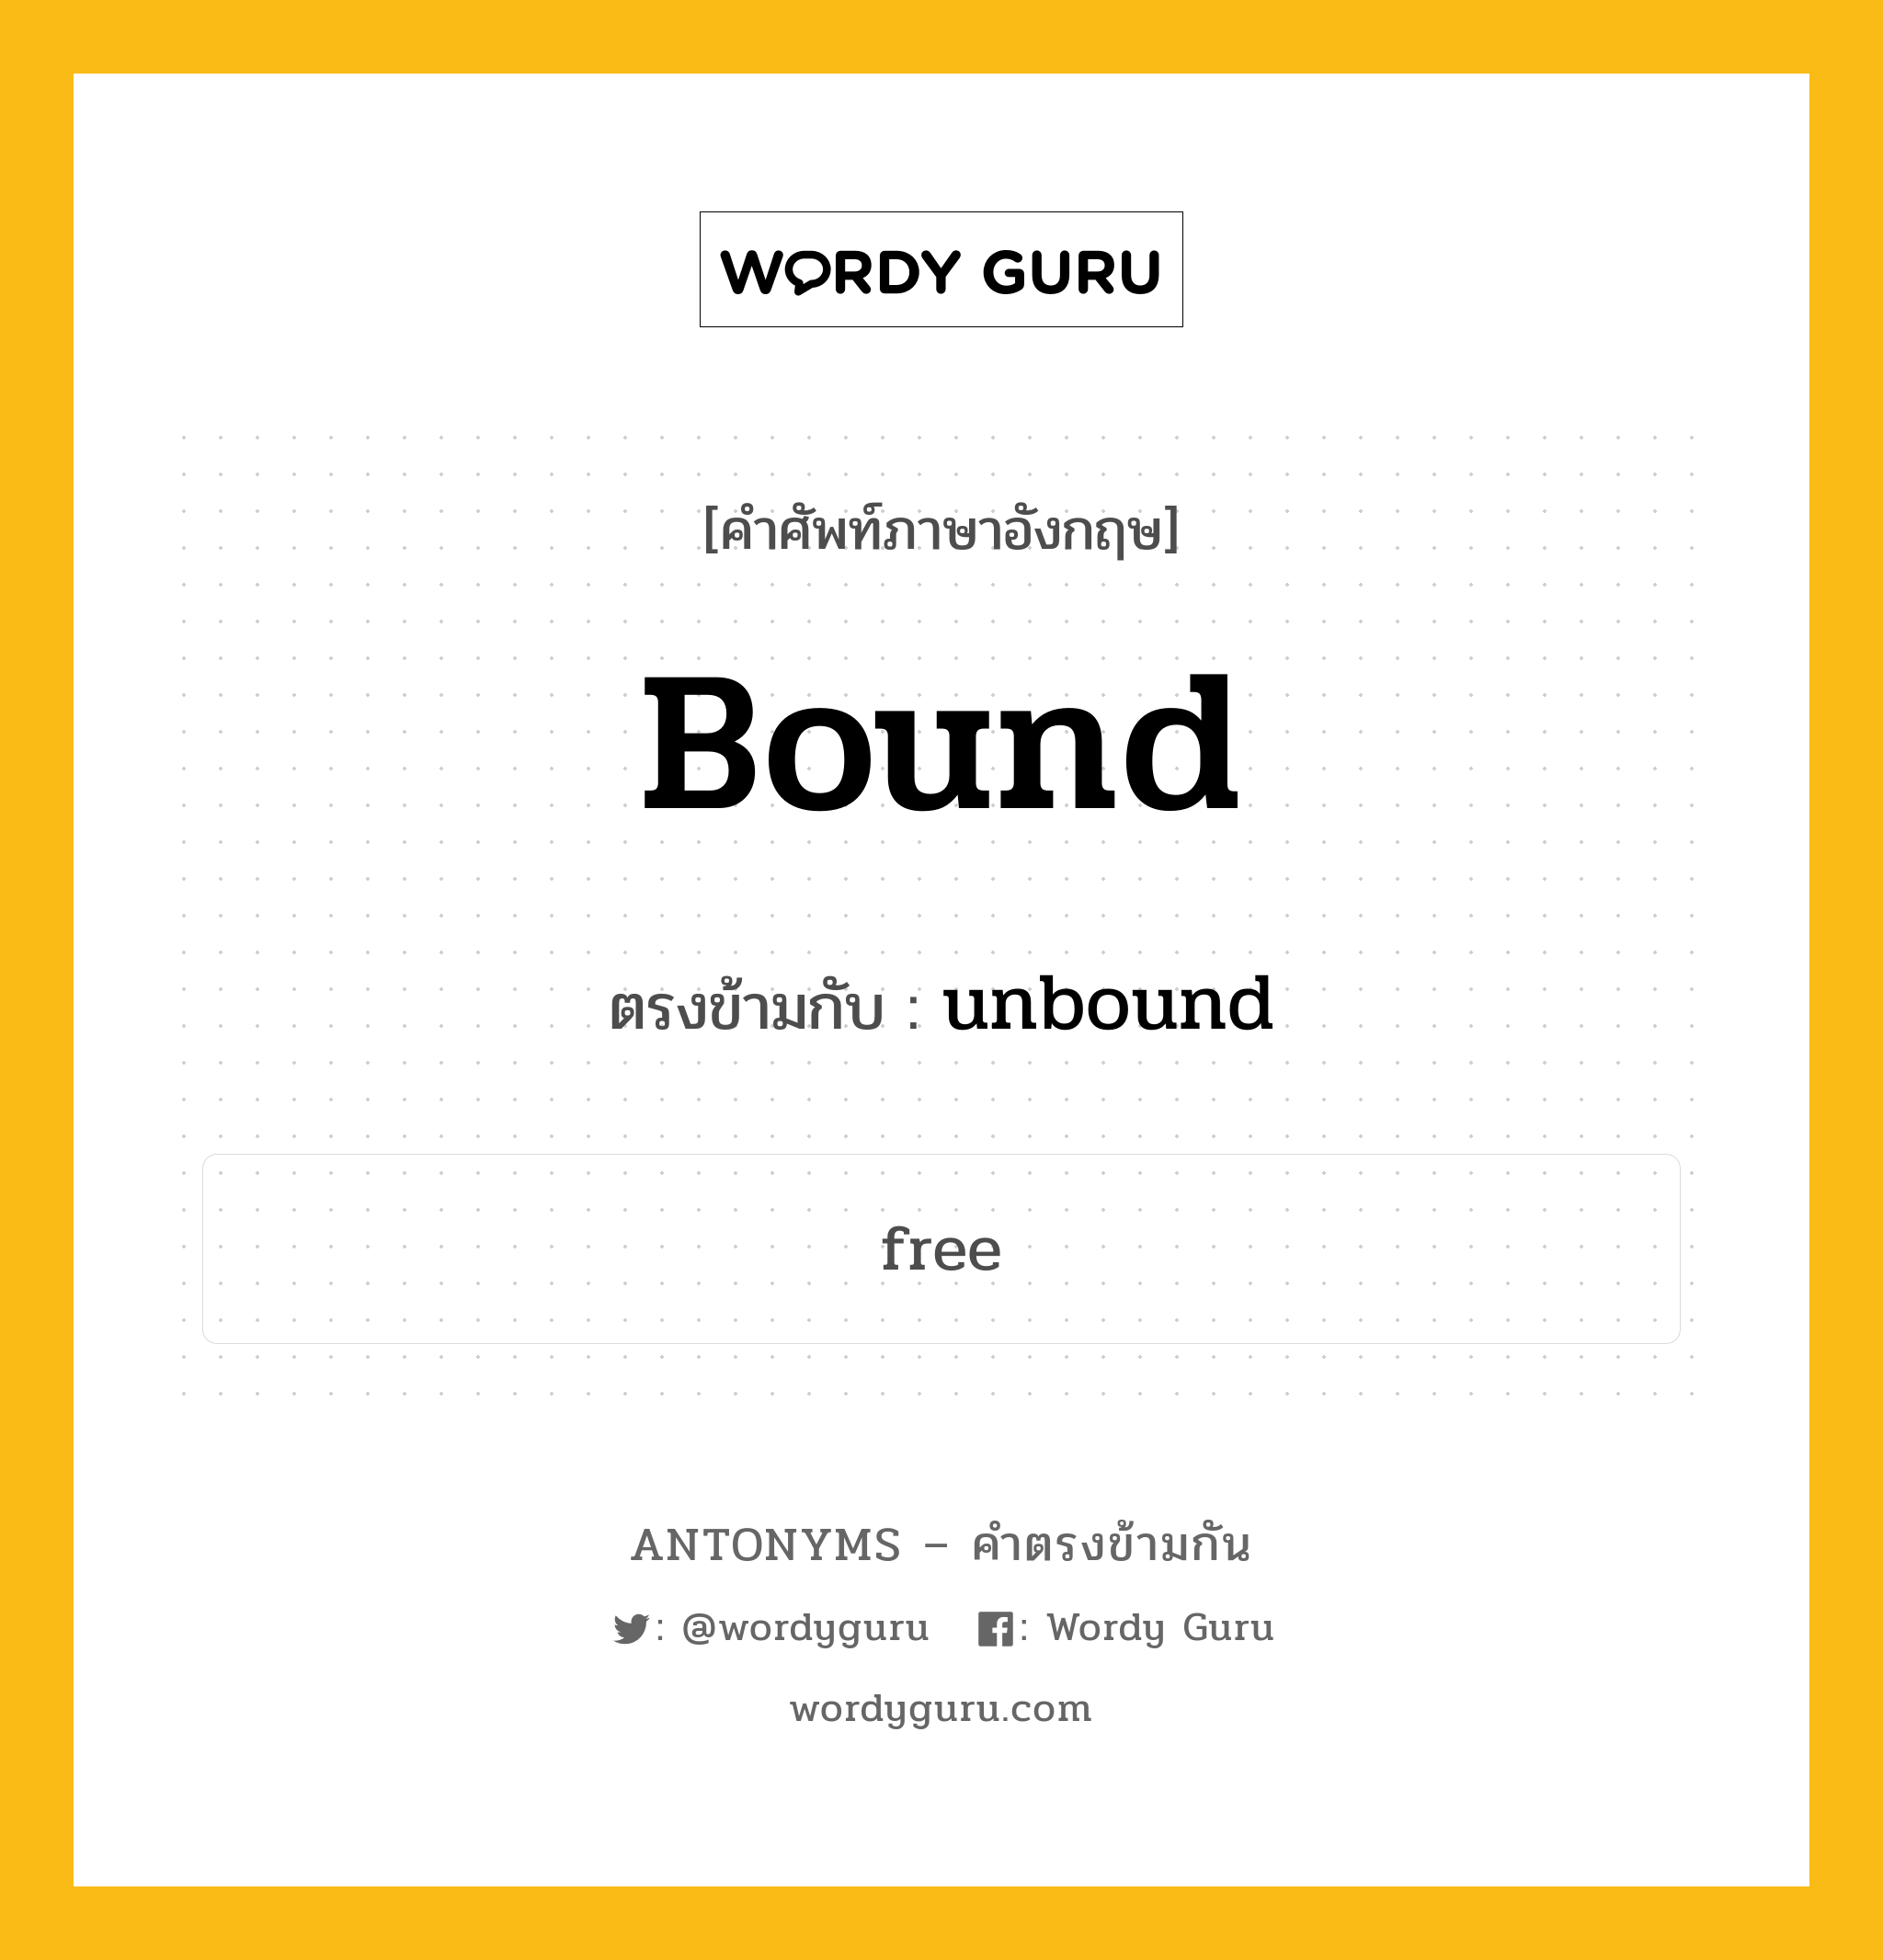 bound เป็นคำตรงข้ามกับคำไหนบ้าง?, คำศัพท์ภาษาอังกฤษ bound ตรงข้ามกับ unbound หมวด unbound